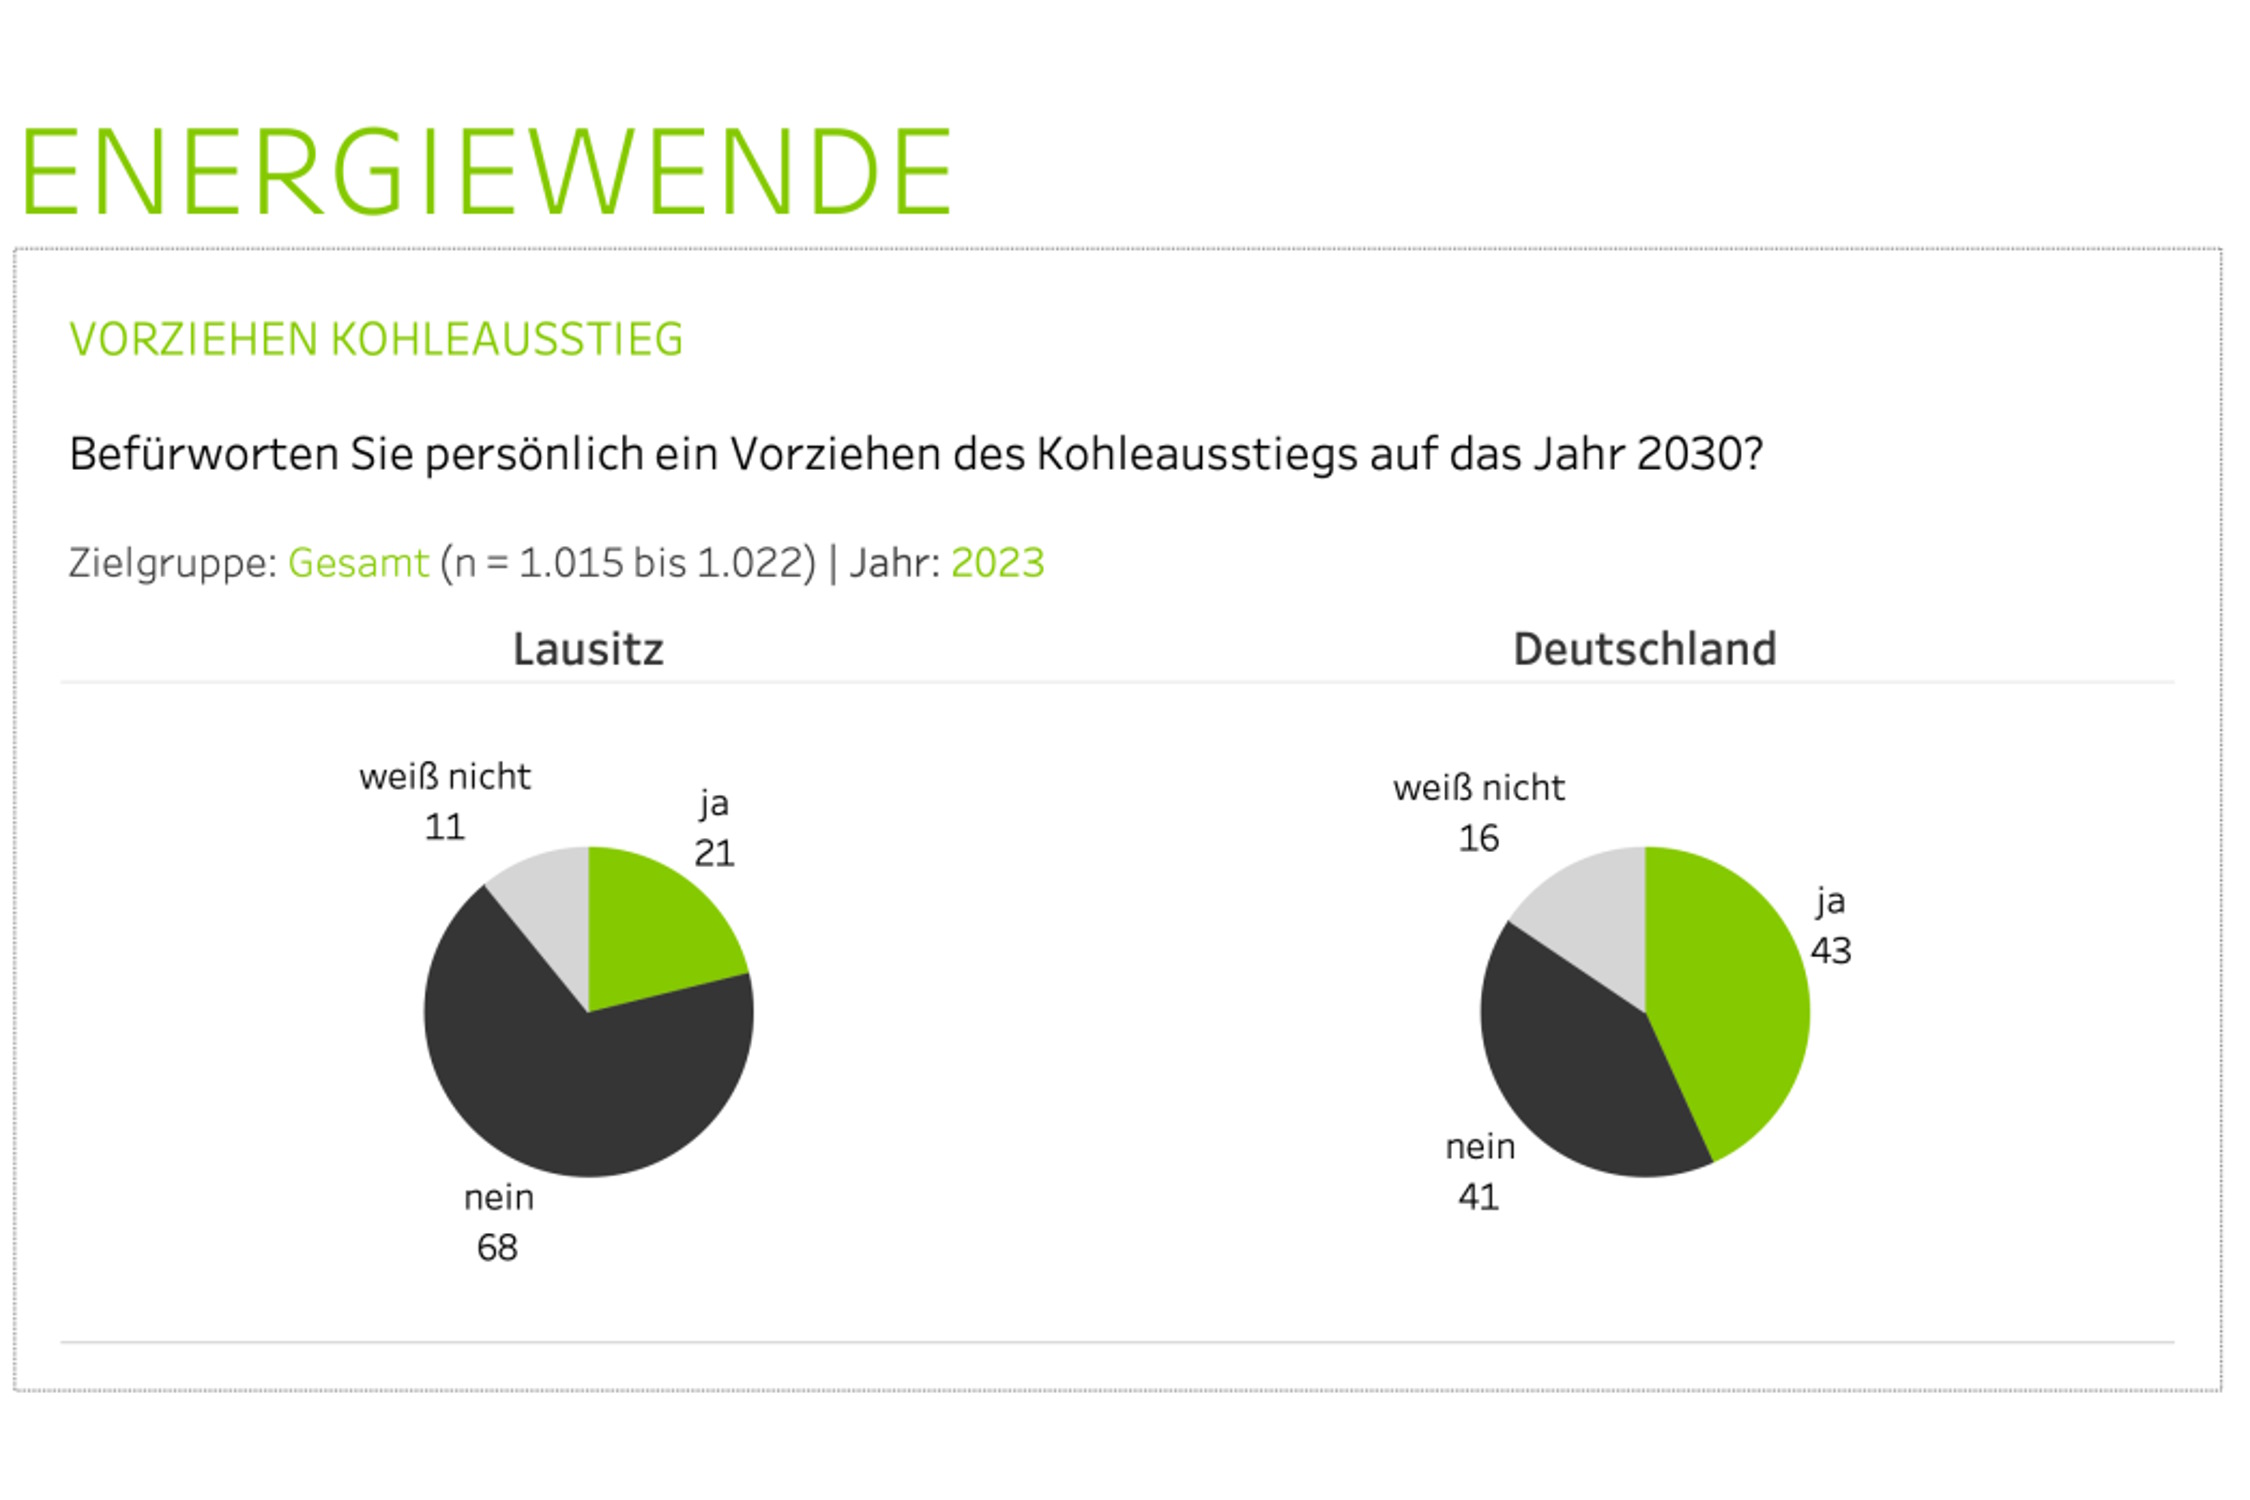 Befürwortung des Kohleausstiegs im Vergleich Deutschland / Lausitz. Grafik: MAS Partners, Prozess Psychologen, SAS